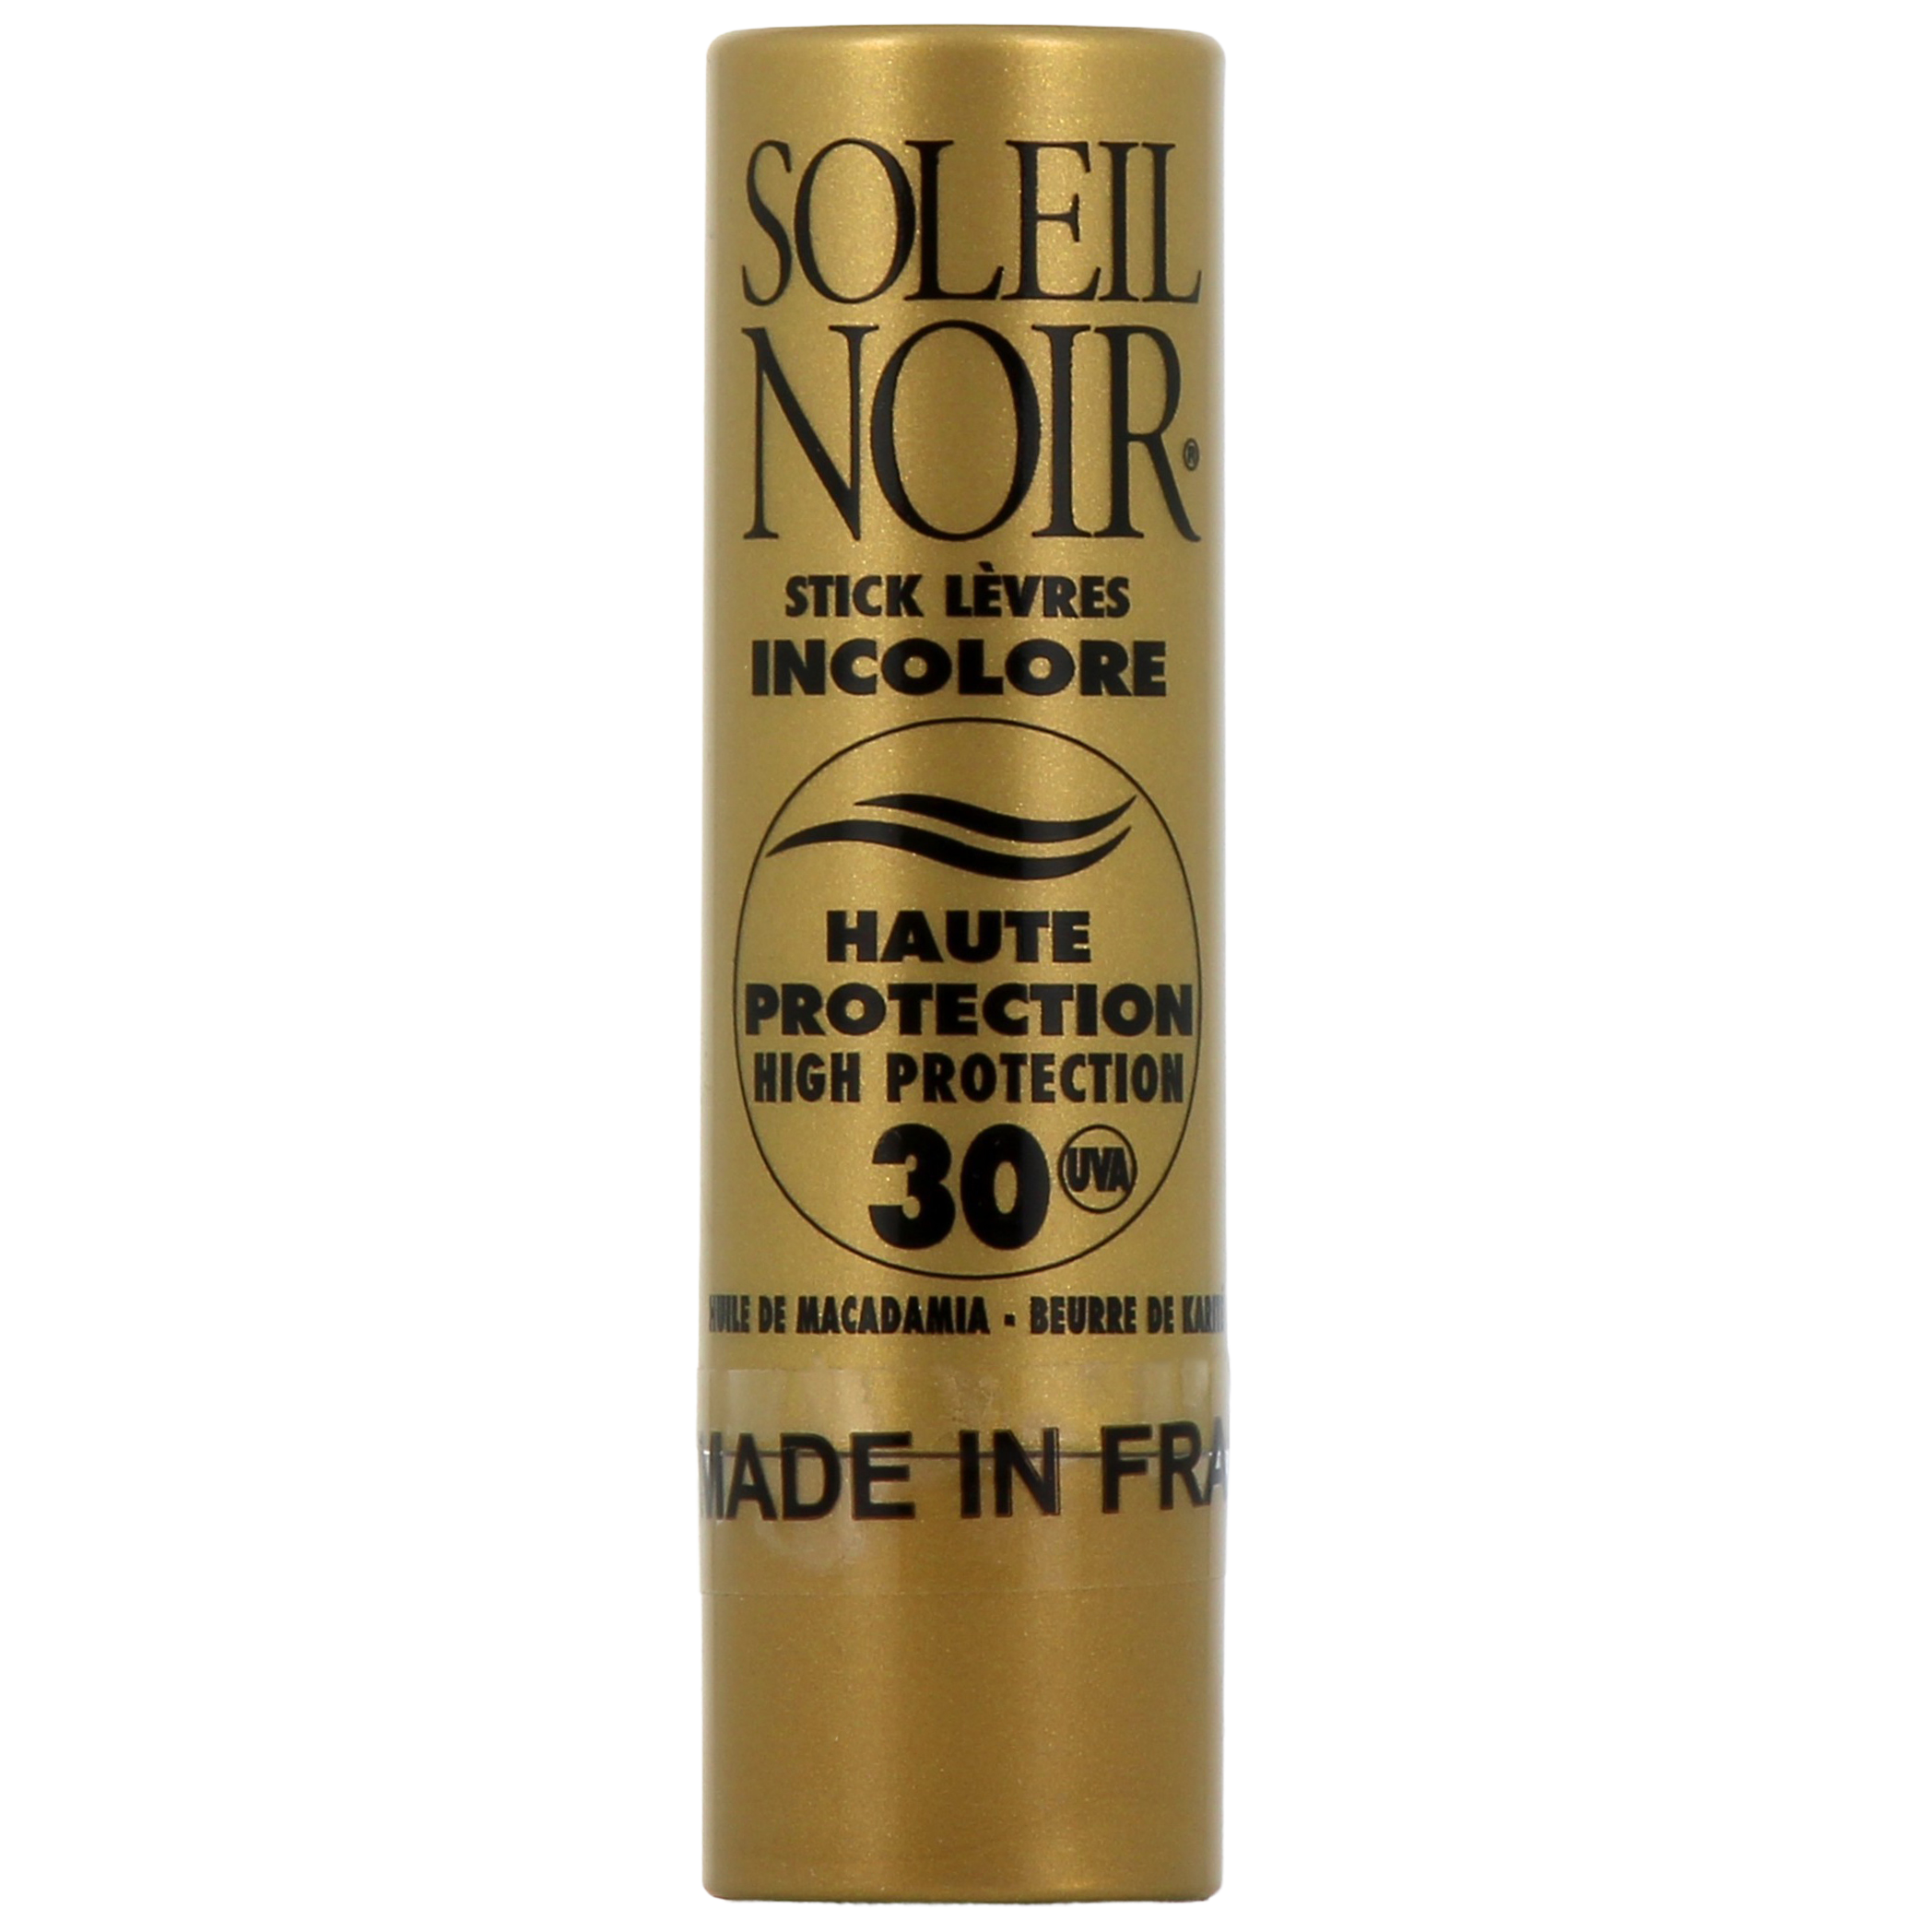 Soleil Noir stick lèvres incolore SPF30 - Haute protection solaire